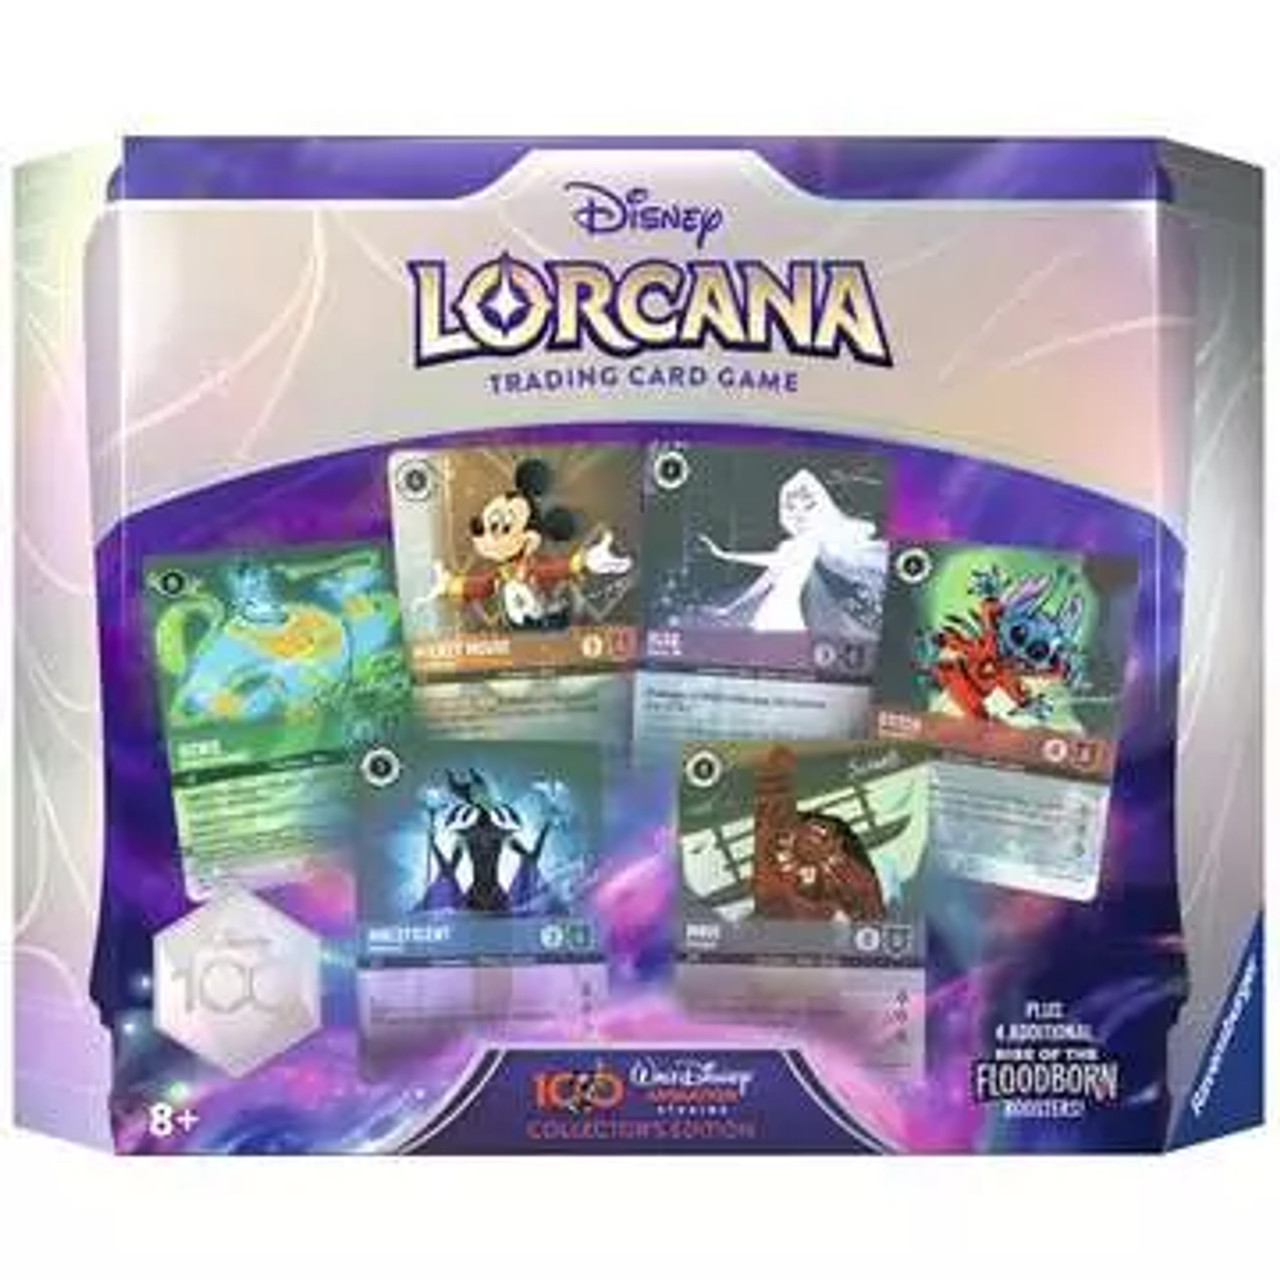 Lorcana Disney 100 Collectors Set #2